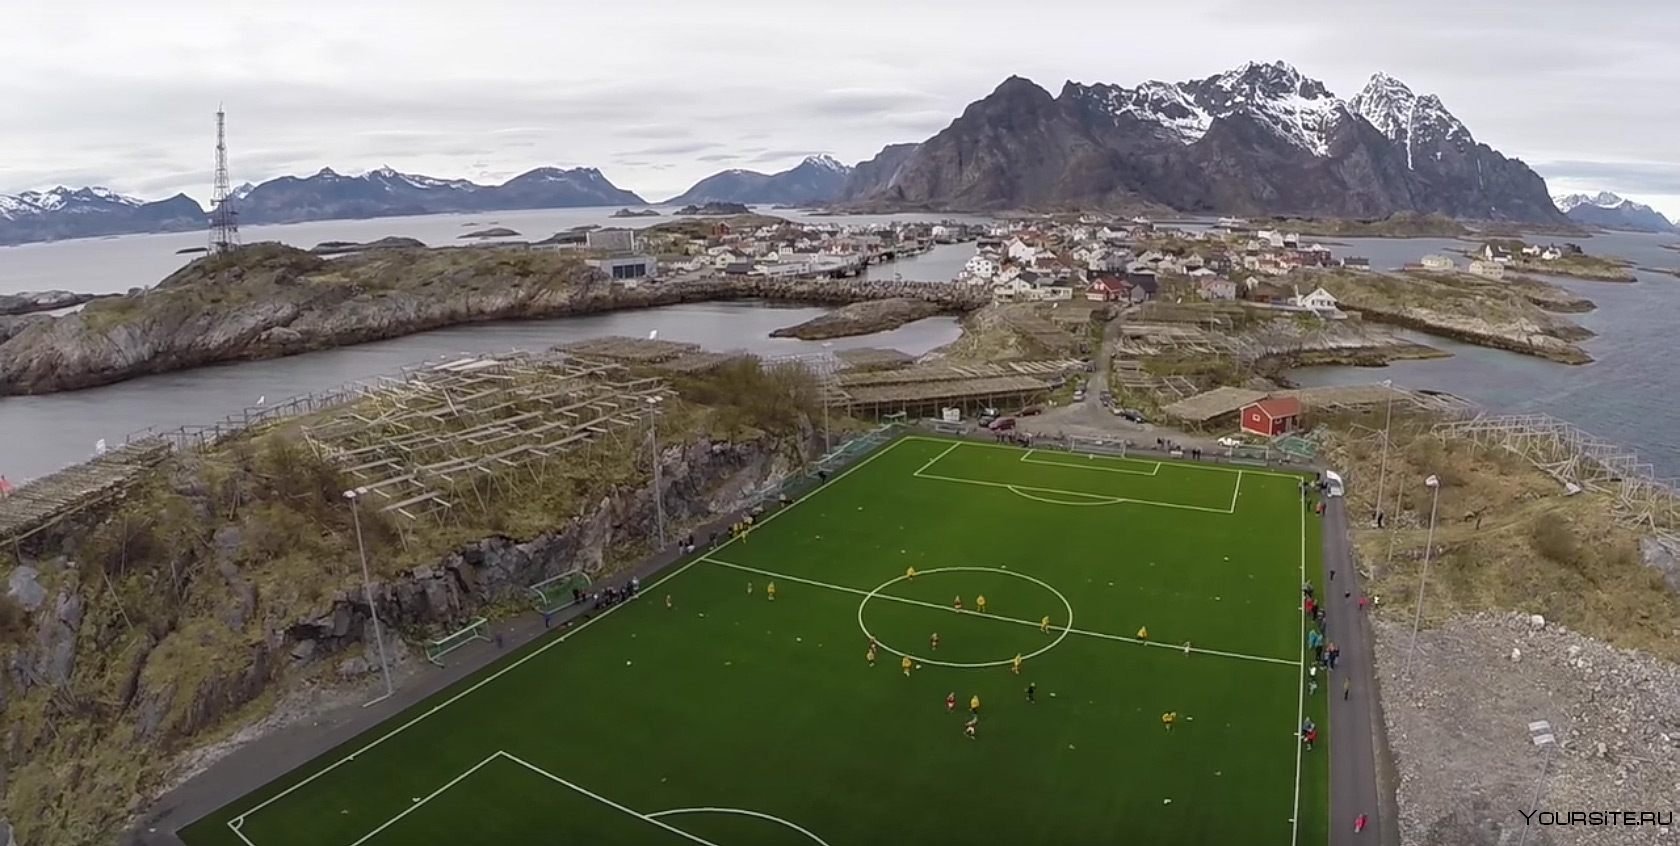 Стадион на острове. Стадион Хеннингсвер. Стадион Хеннингсвер, Норвегия. Стадион на острове Хеннингсвер, Норвегия. Стадион в деревне Хеннингсвер в Норвегии.